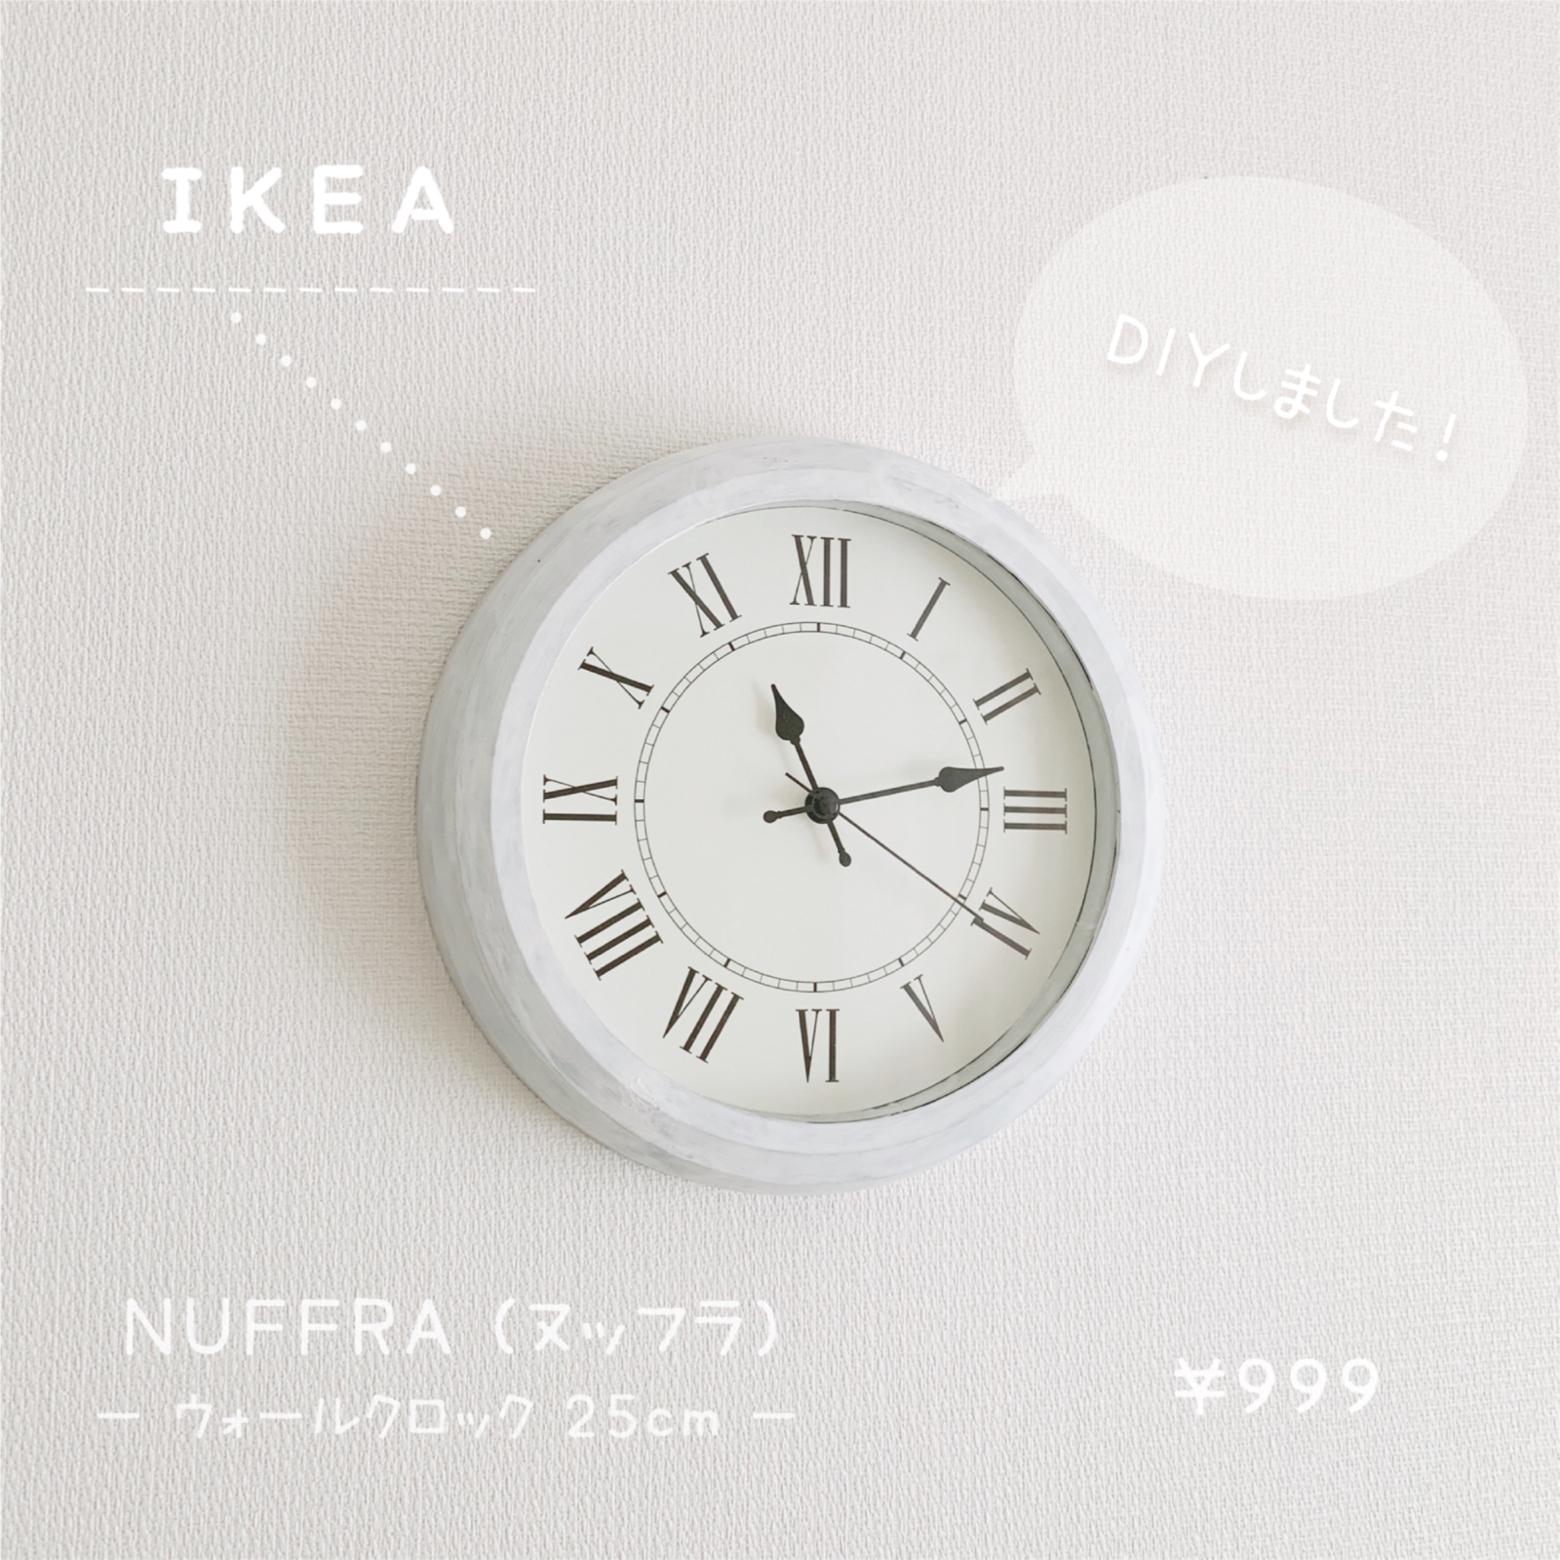 Ikeaの時計をホワイトカラーにdiy ほわいと が投稿したフォトブック Sharee